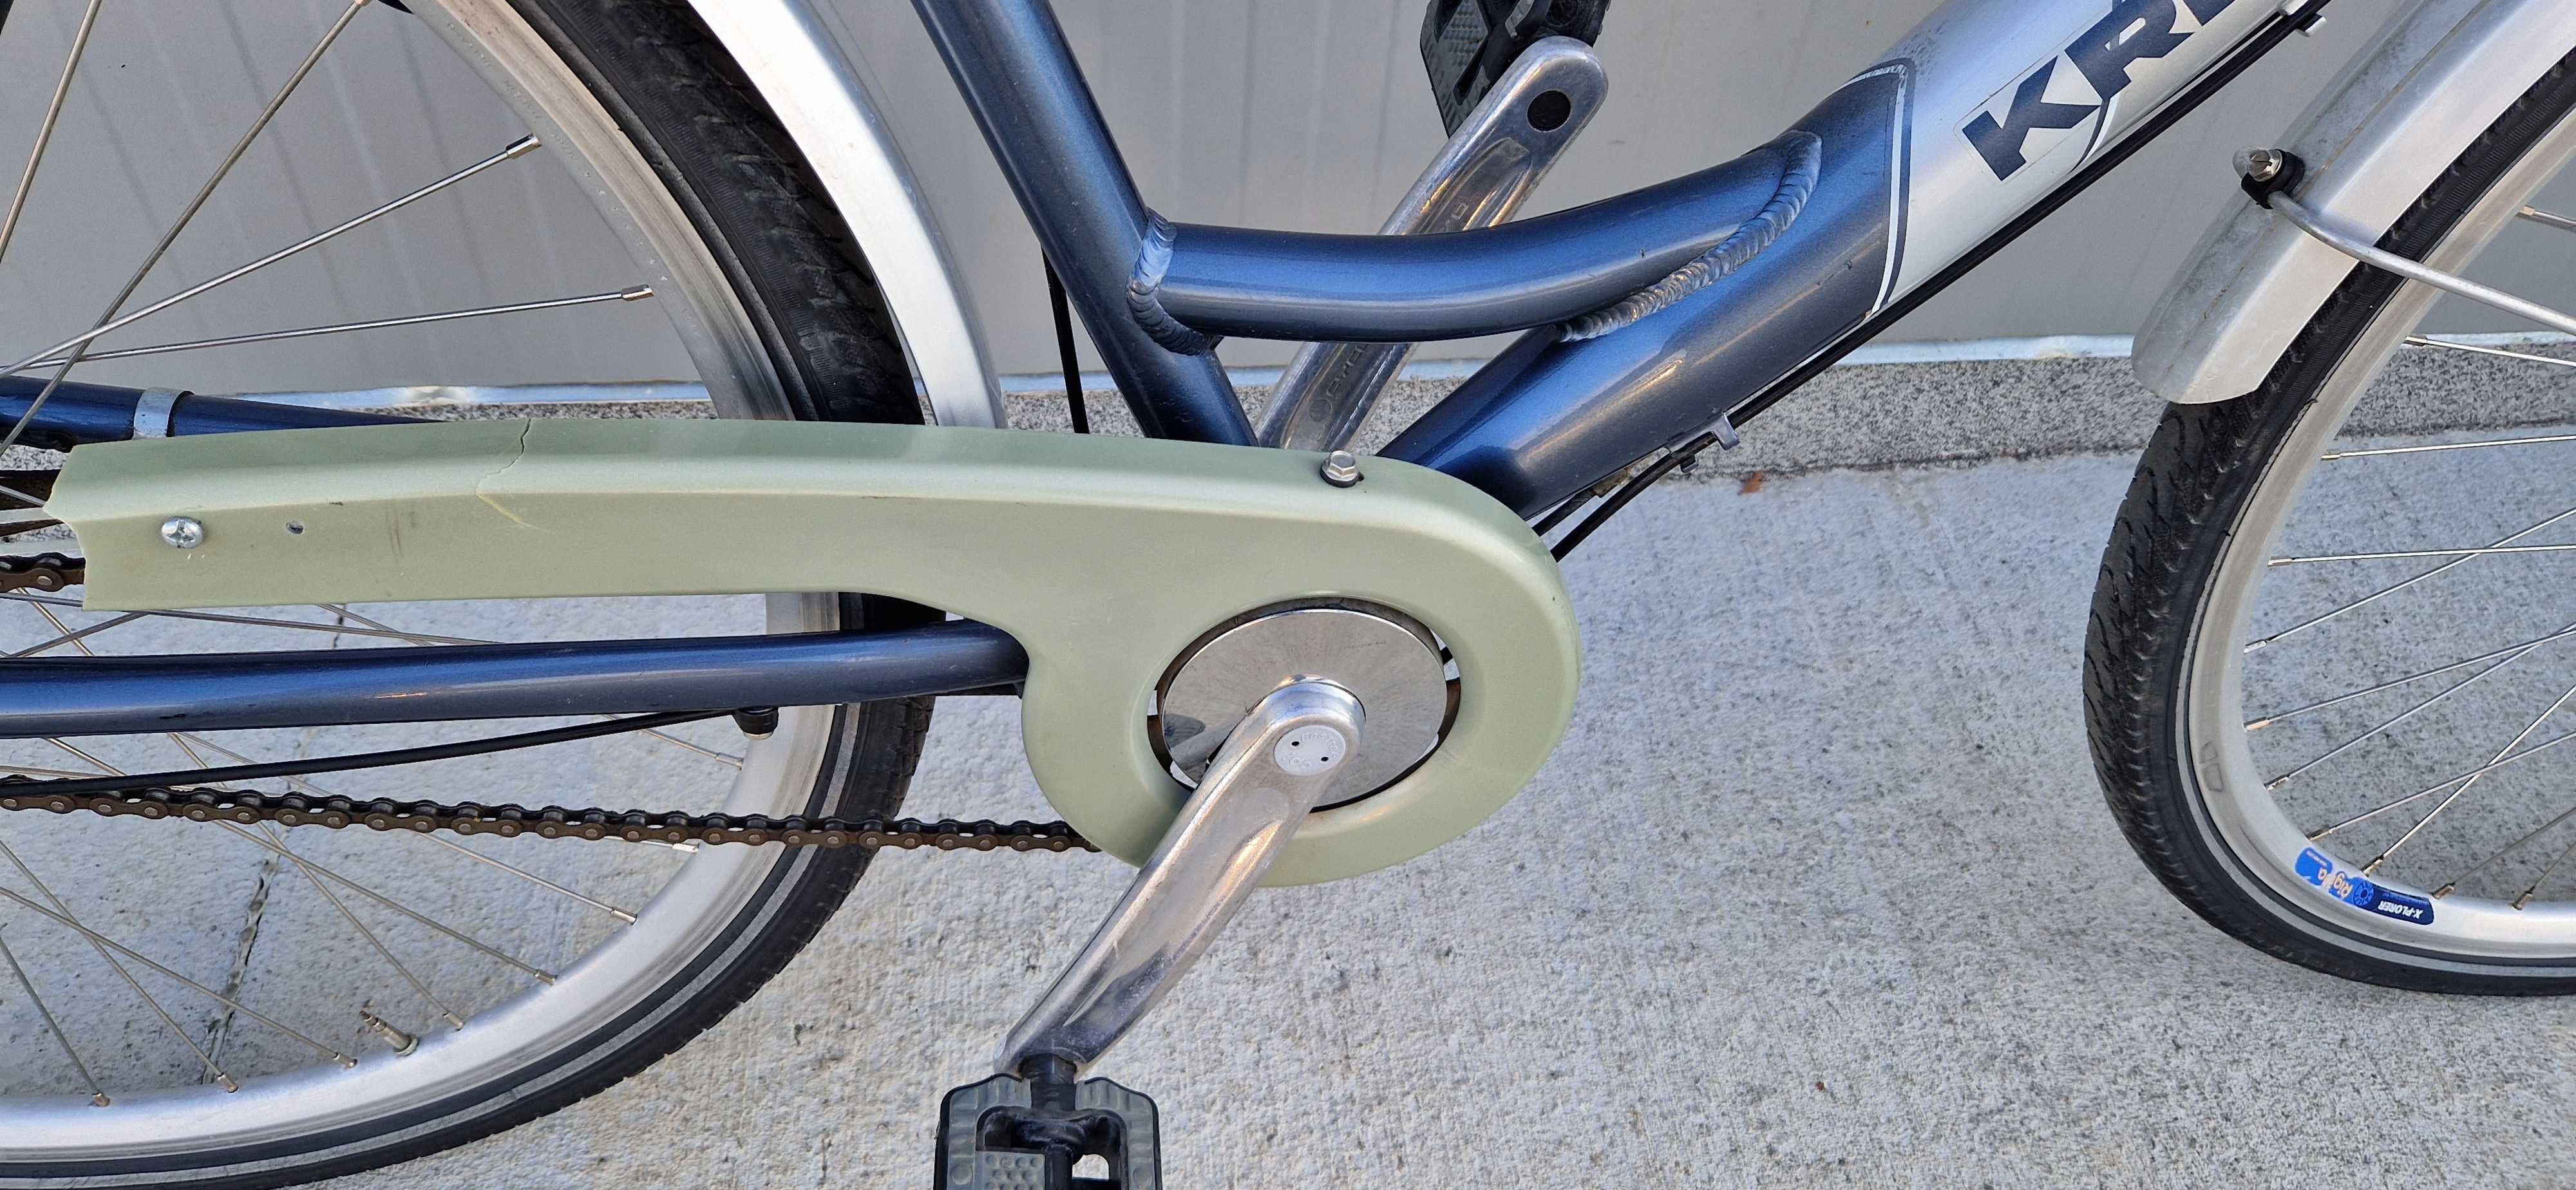 Дамски алуминиев велосипед KREIDLER, колело 28"